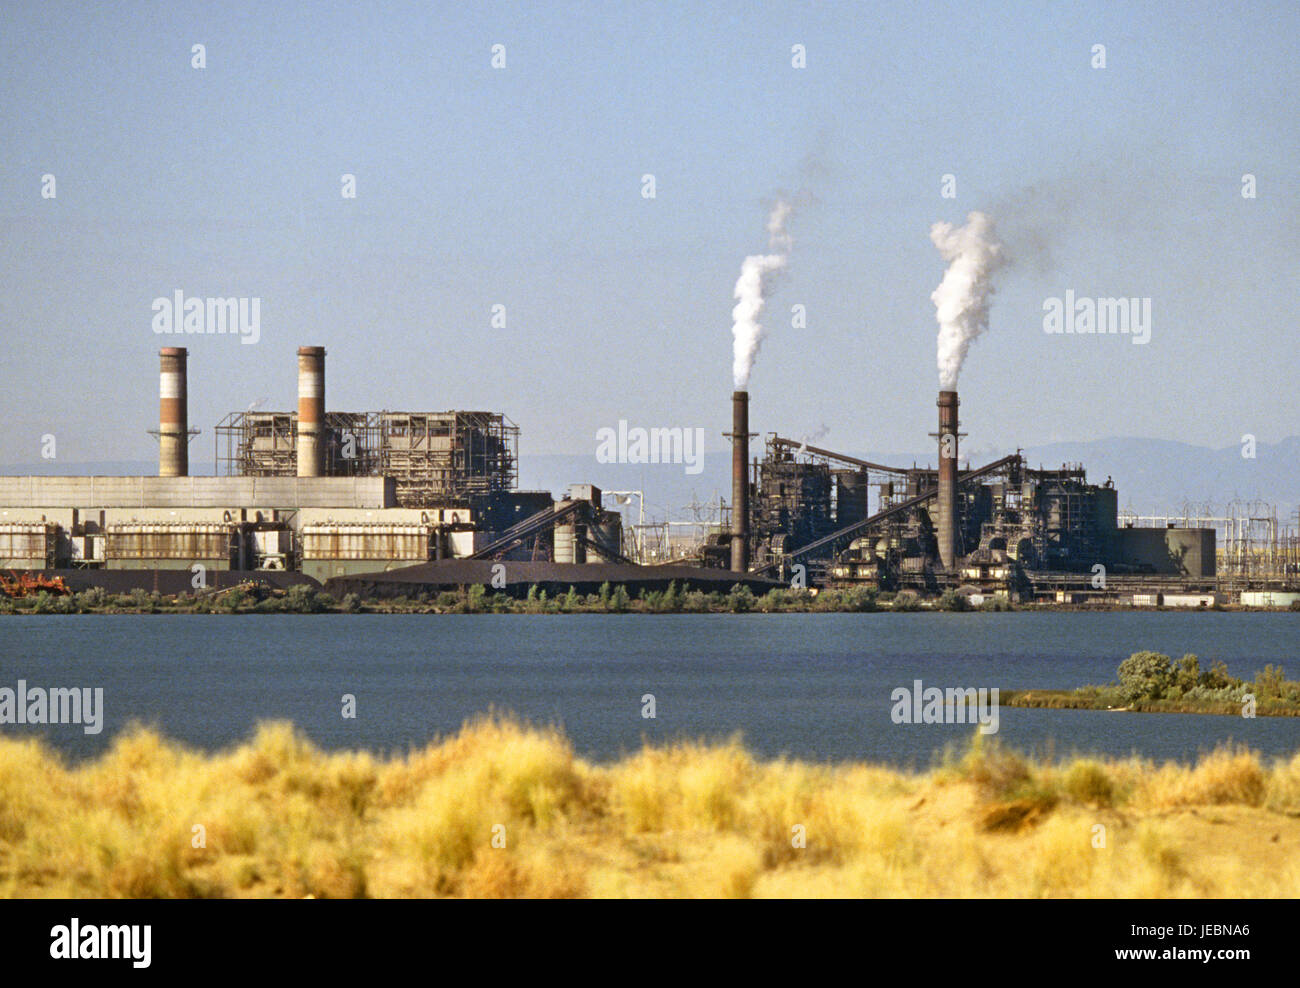 La centrale a carbone dai quattro angoli dell'impianto di alimentazione nel New Mexico settentrionale. Foto Stock